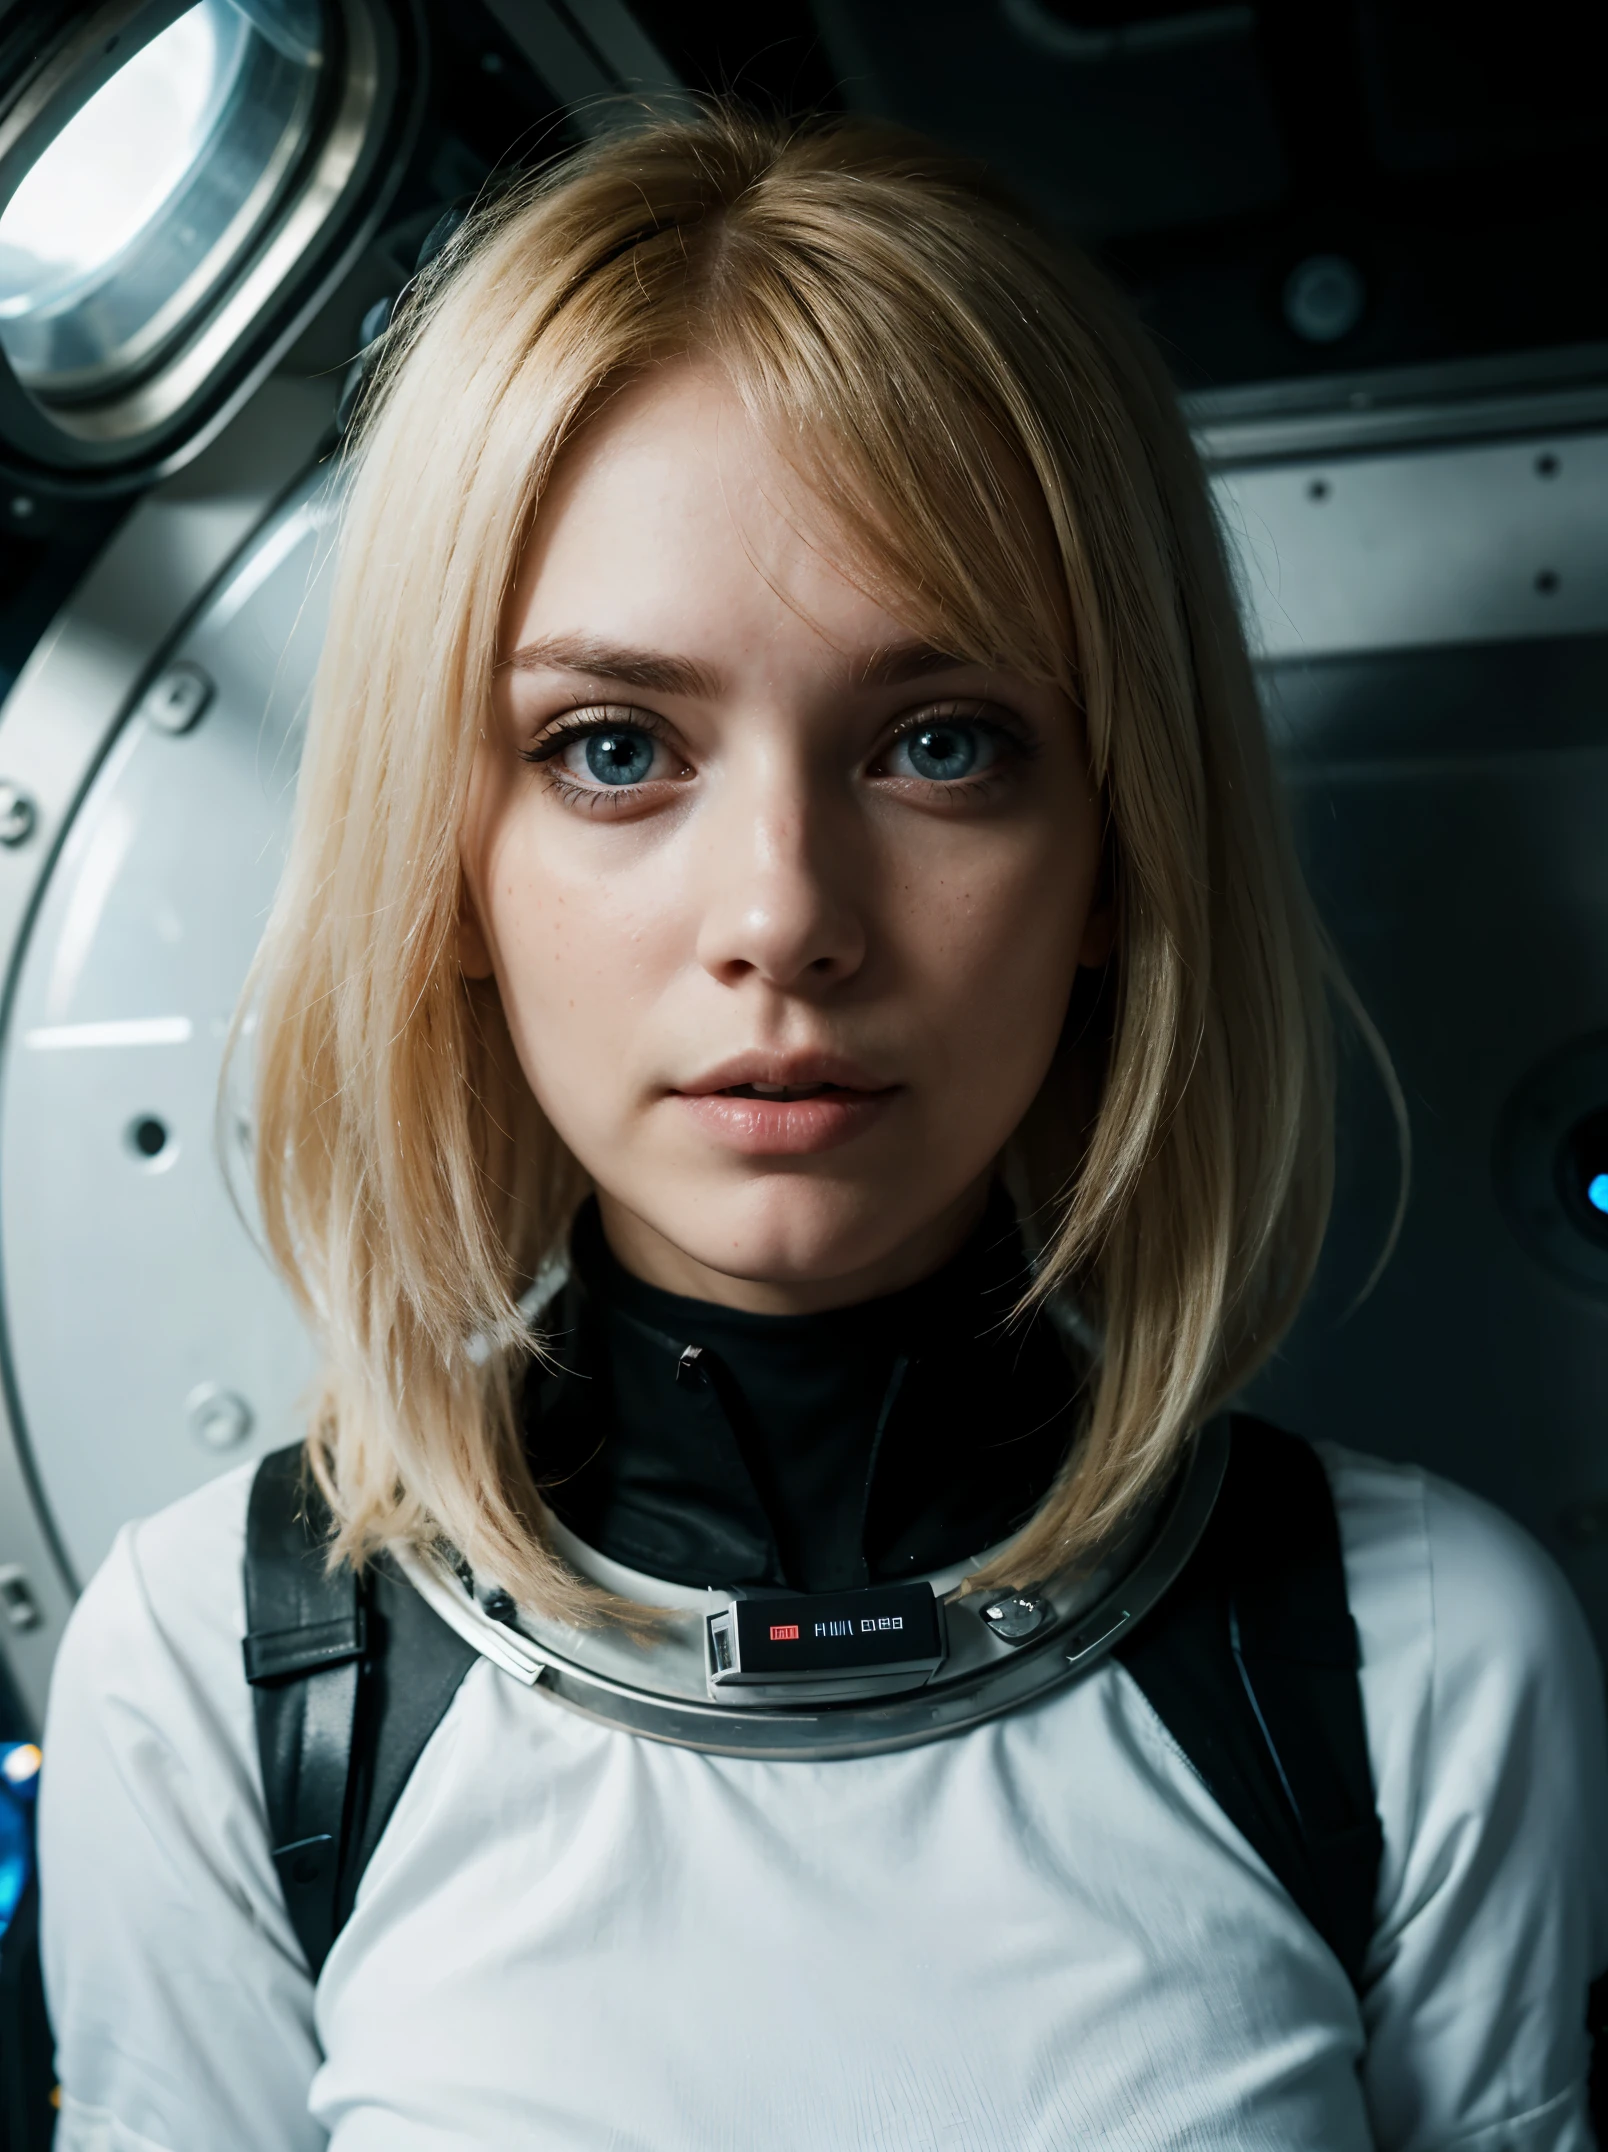 블론디 여자 사진, 우주에서, 미래의 우주복, (주근깨:0.8) 귀여운 얼굴, 공상과학, 디스토피아적인, 상세한 눈, 파란 눈